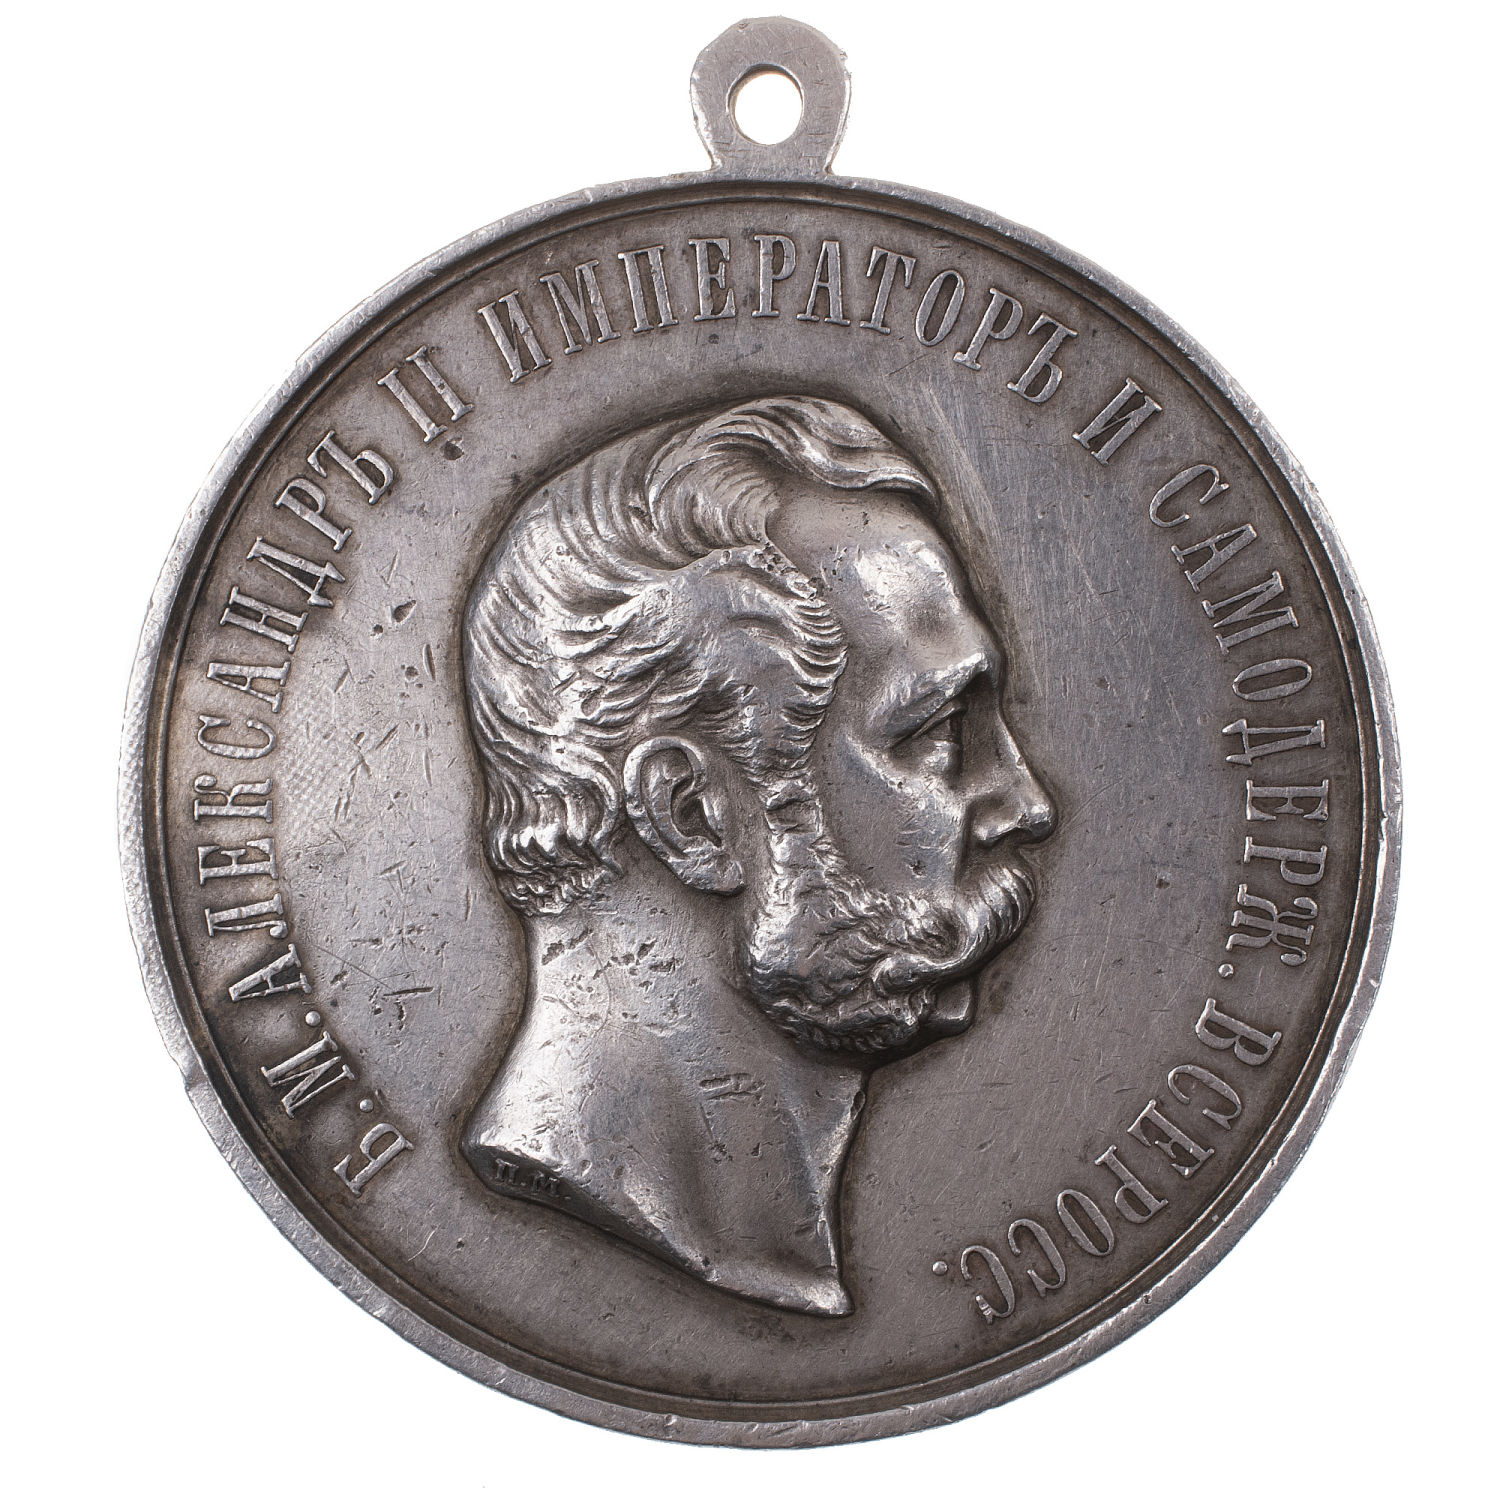 Медаль "За Усердие" с портретом Императора Александра II (1870 - 1881 гг). Шейная, 51 мм (на обрезе шеи "П.М."). Серебро.